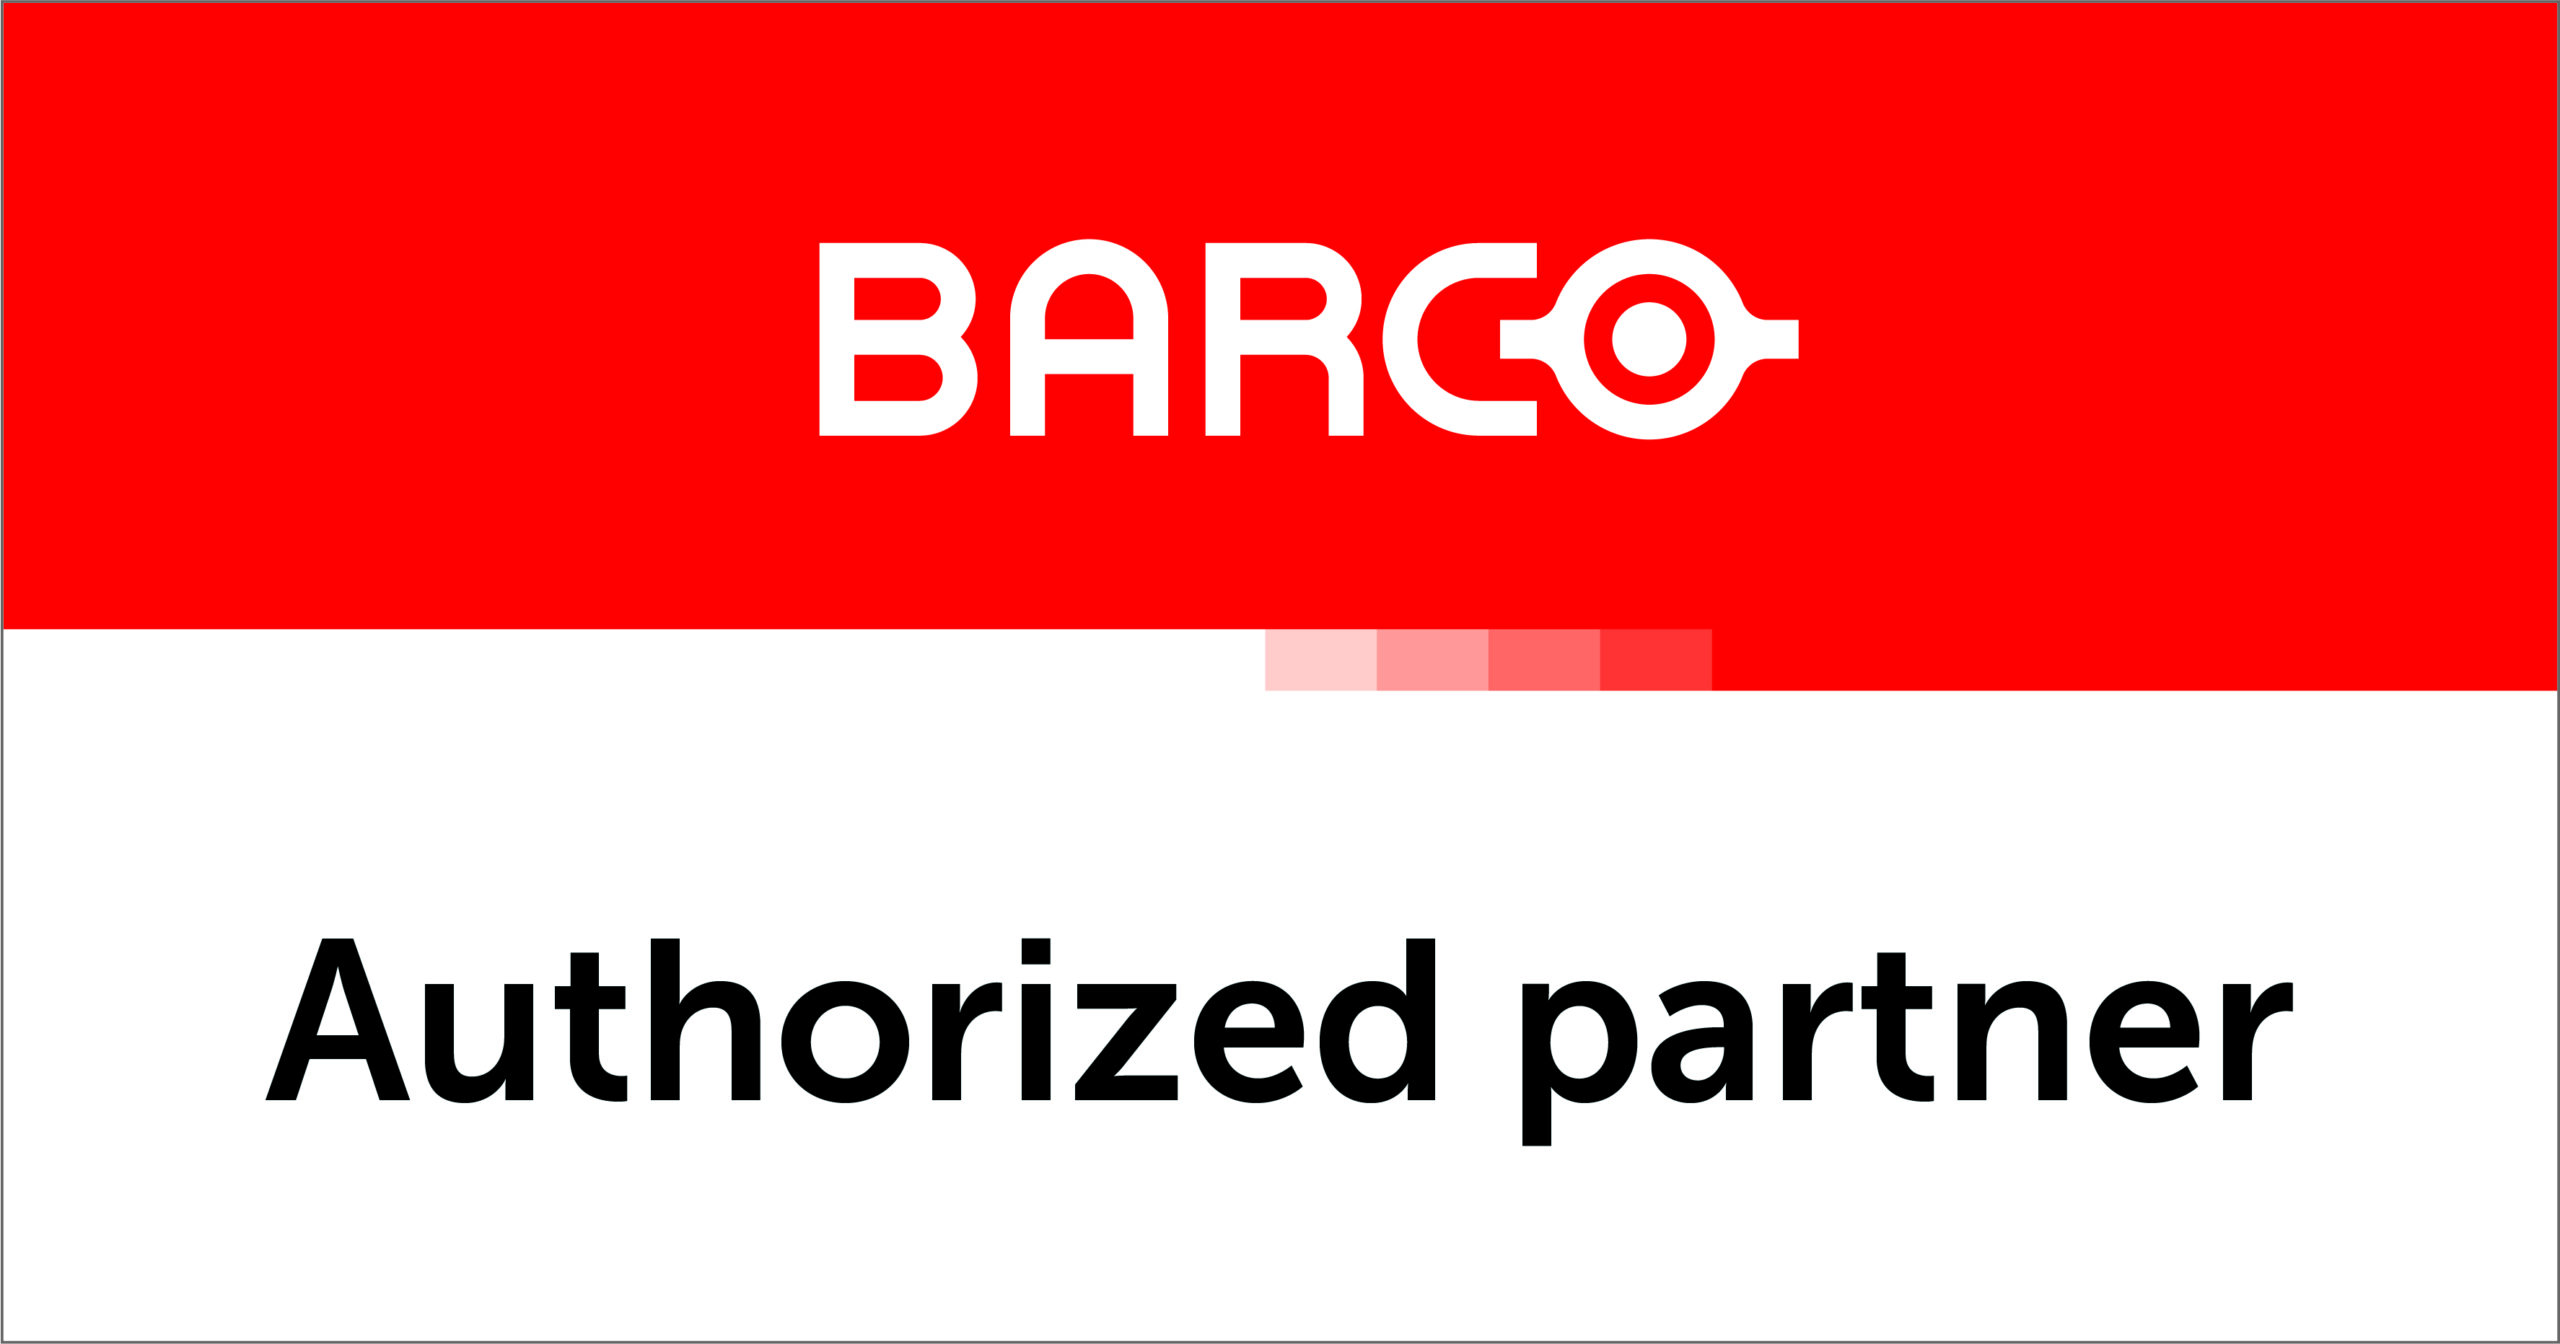 Barco Authorized partner